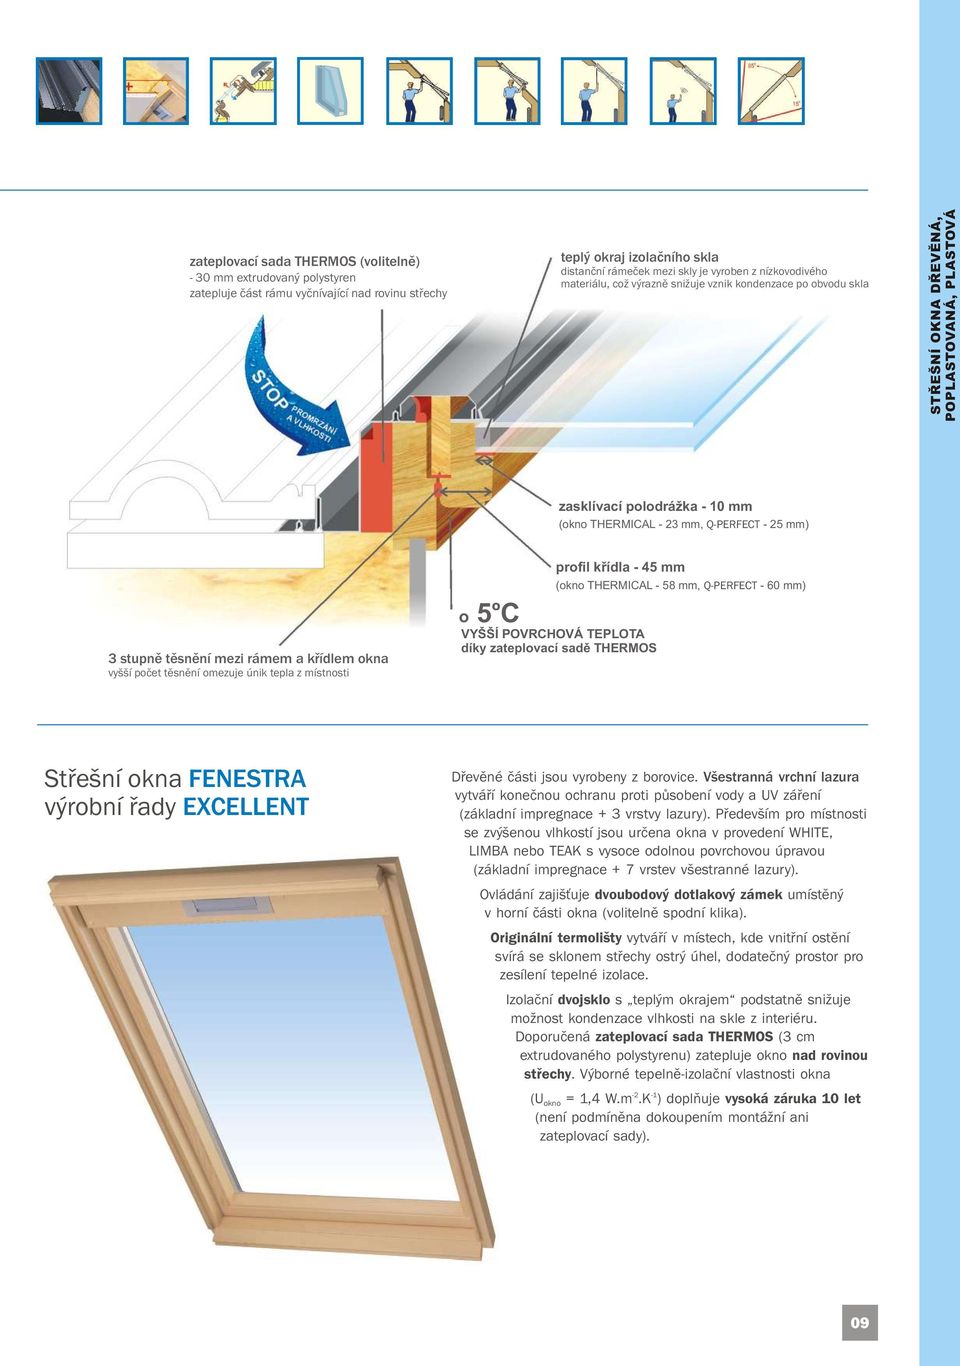 stupně těsnění mezi rámem a křídlem okna vyšší počet těsnění omezuje únik tepla z místnosti profil křídla - 45 mm (okno THERMICAL - 58 mm, Q-PERFECT - 60 mm) O o 5 C VYŠŠÍ POVRCHOVÁ TEPLOTA díky